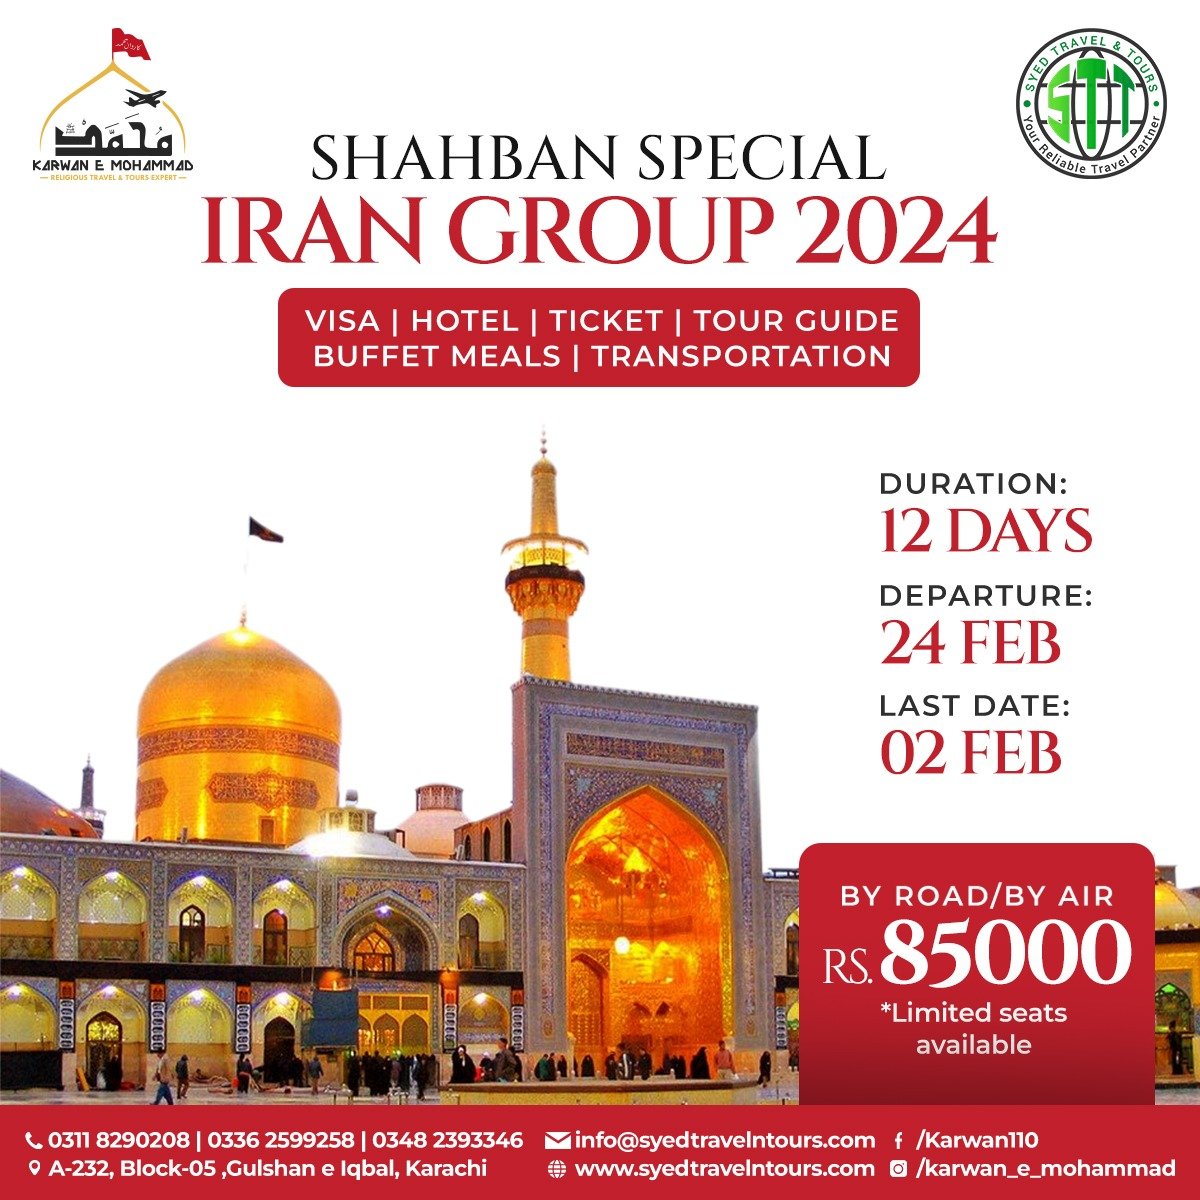 Shaban Iran Group 2024 discounted